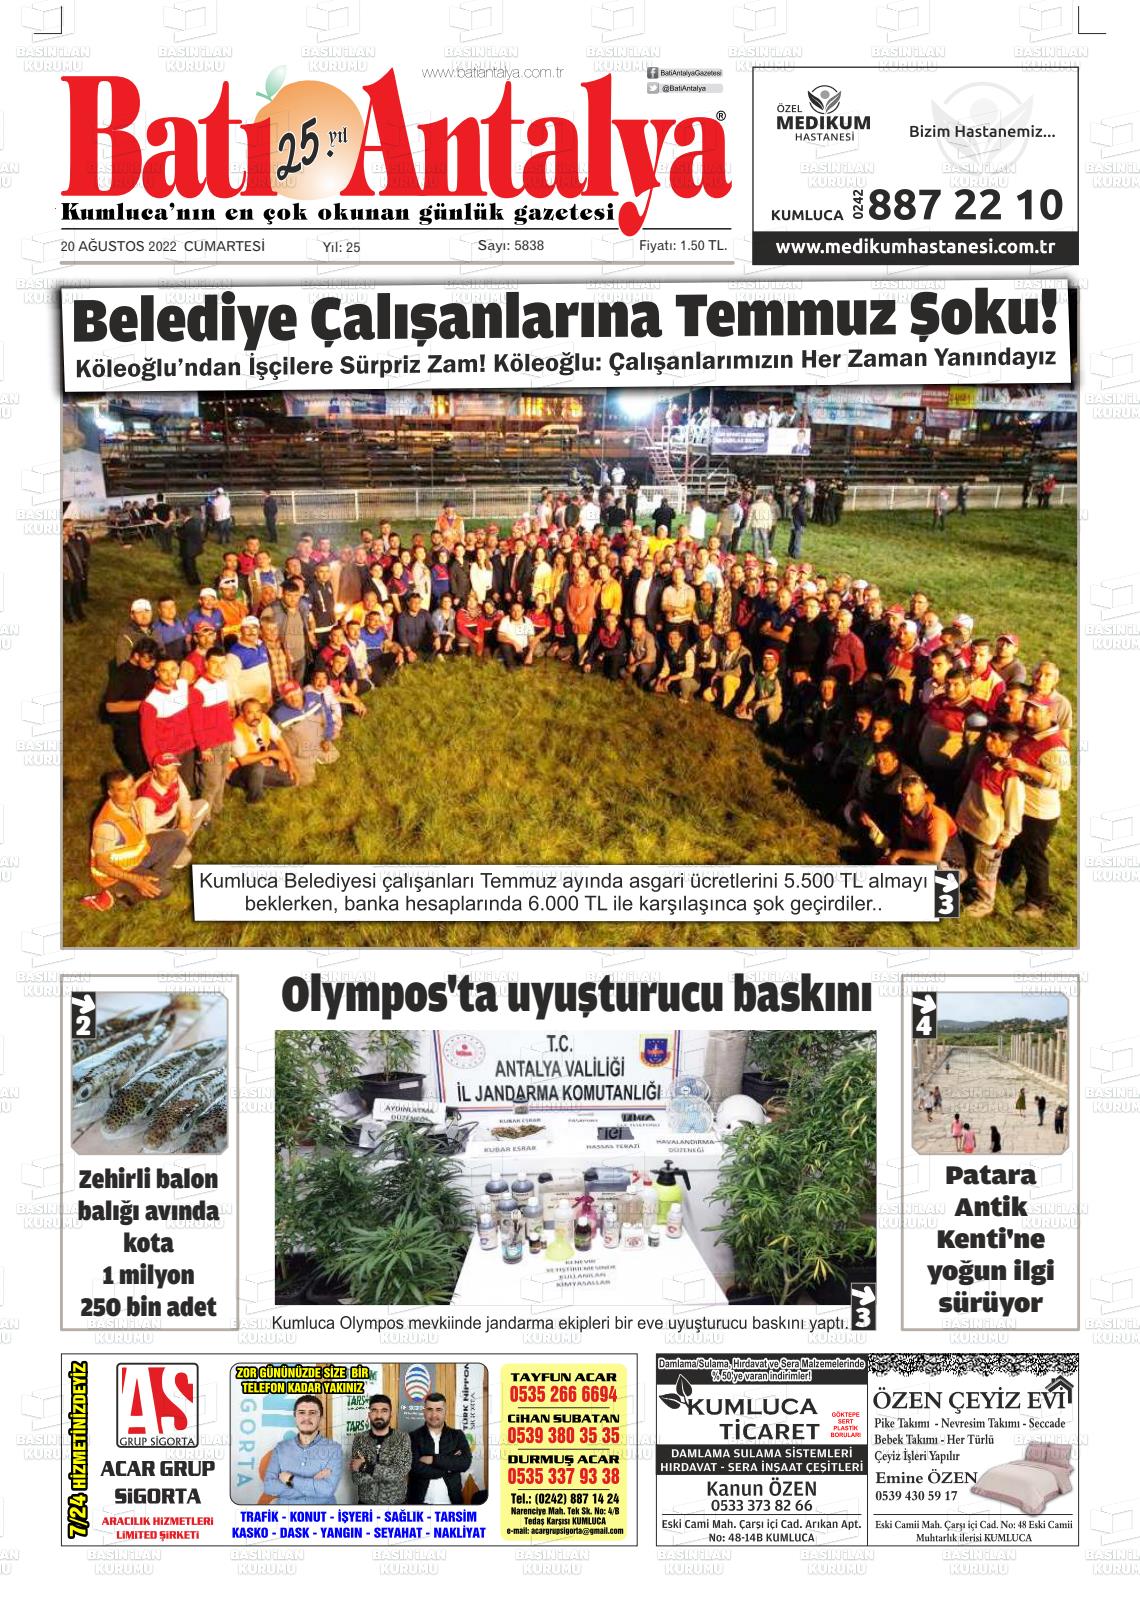 20 Ağustos 2022 Batı Antalya Gazete Manşeti